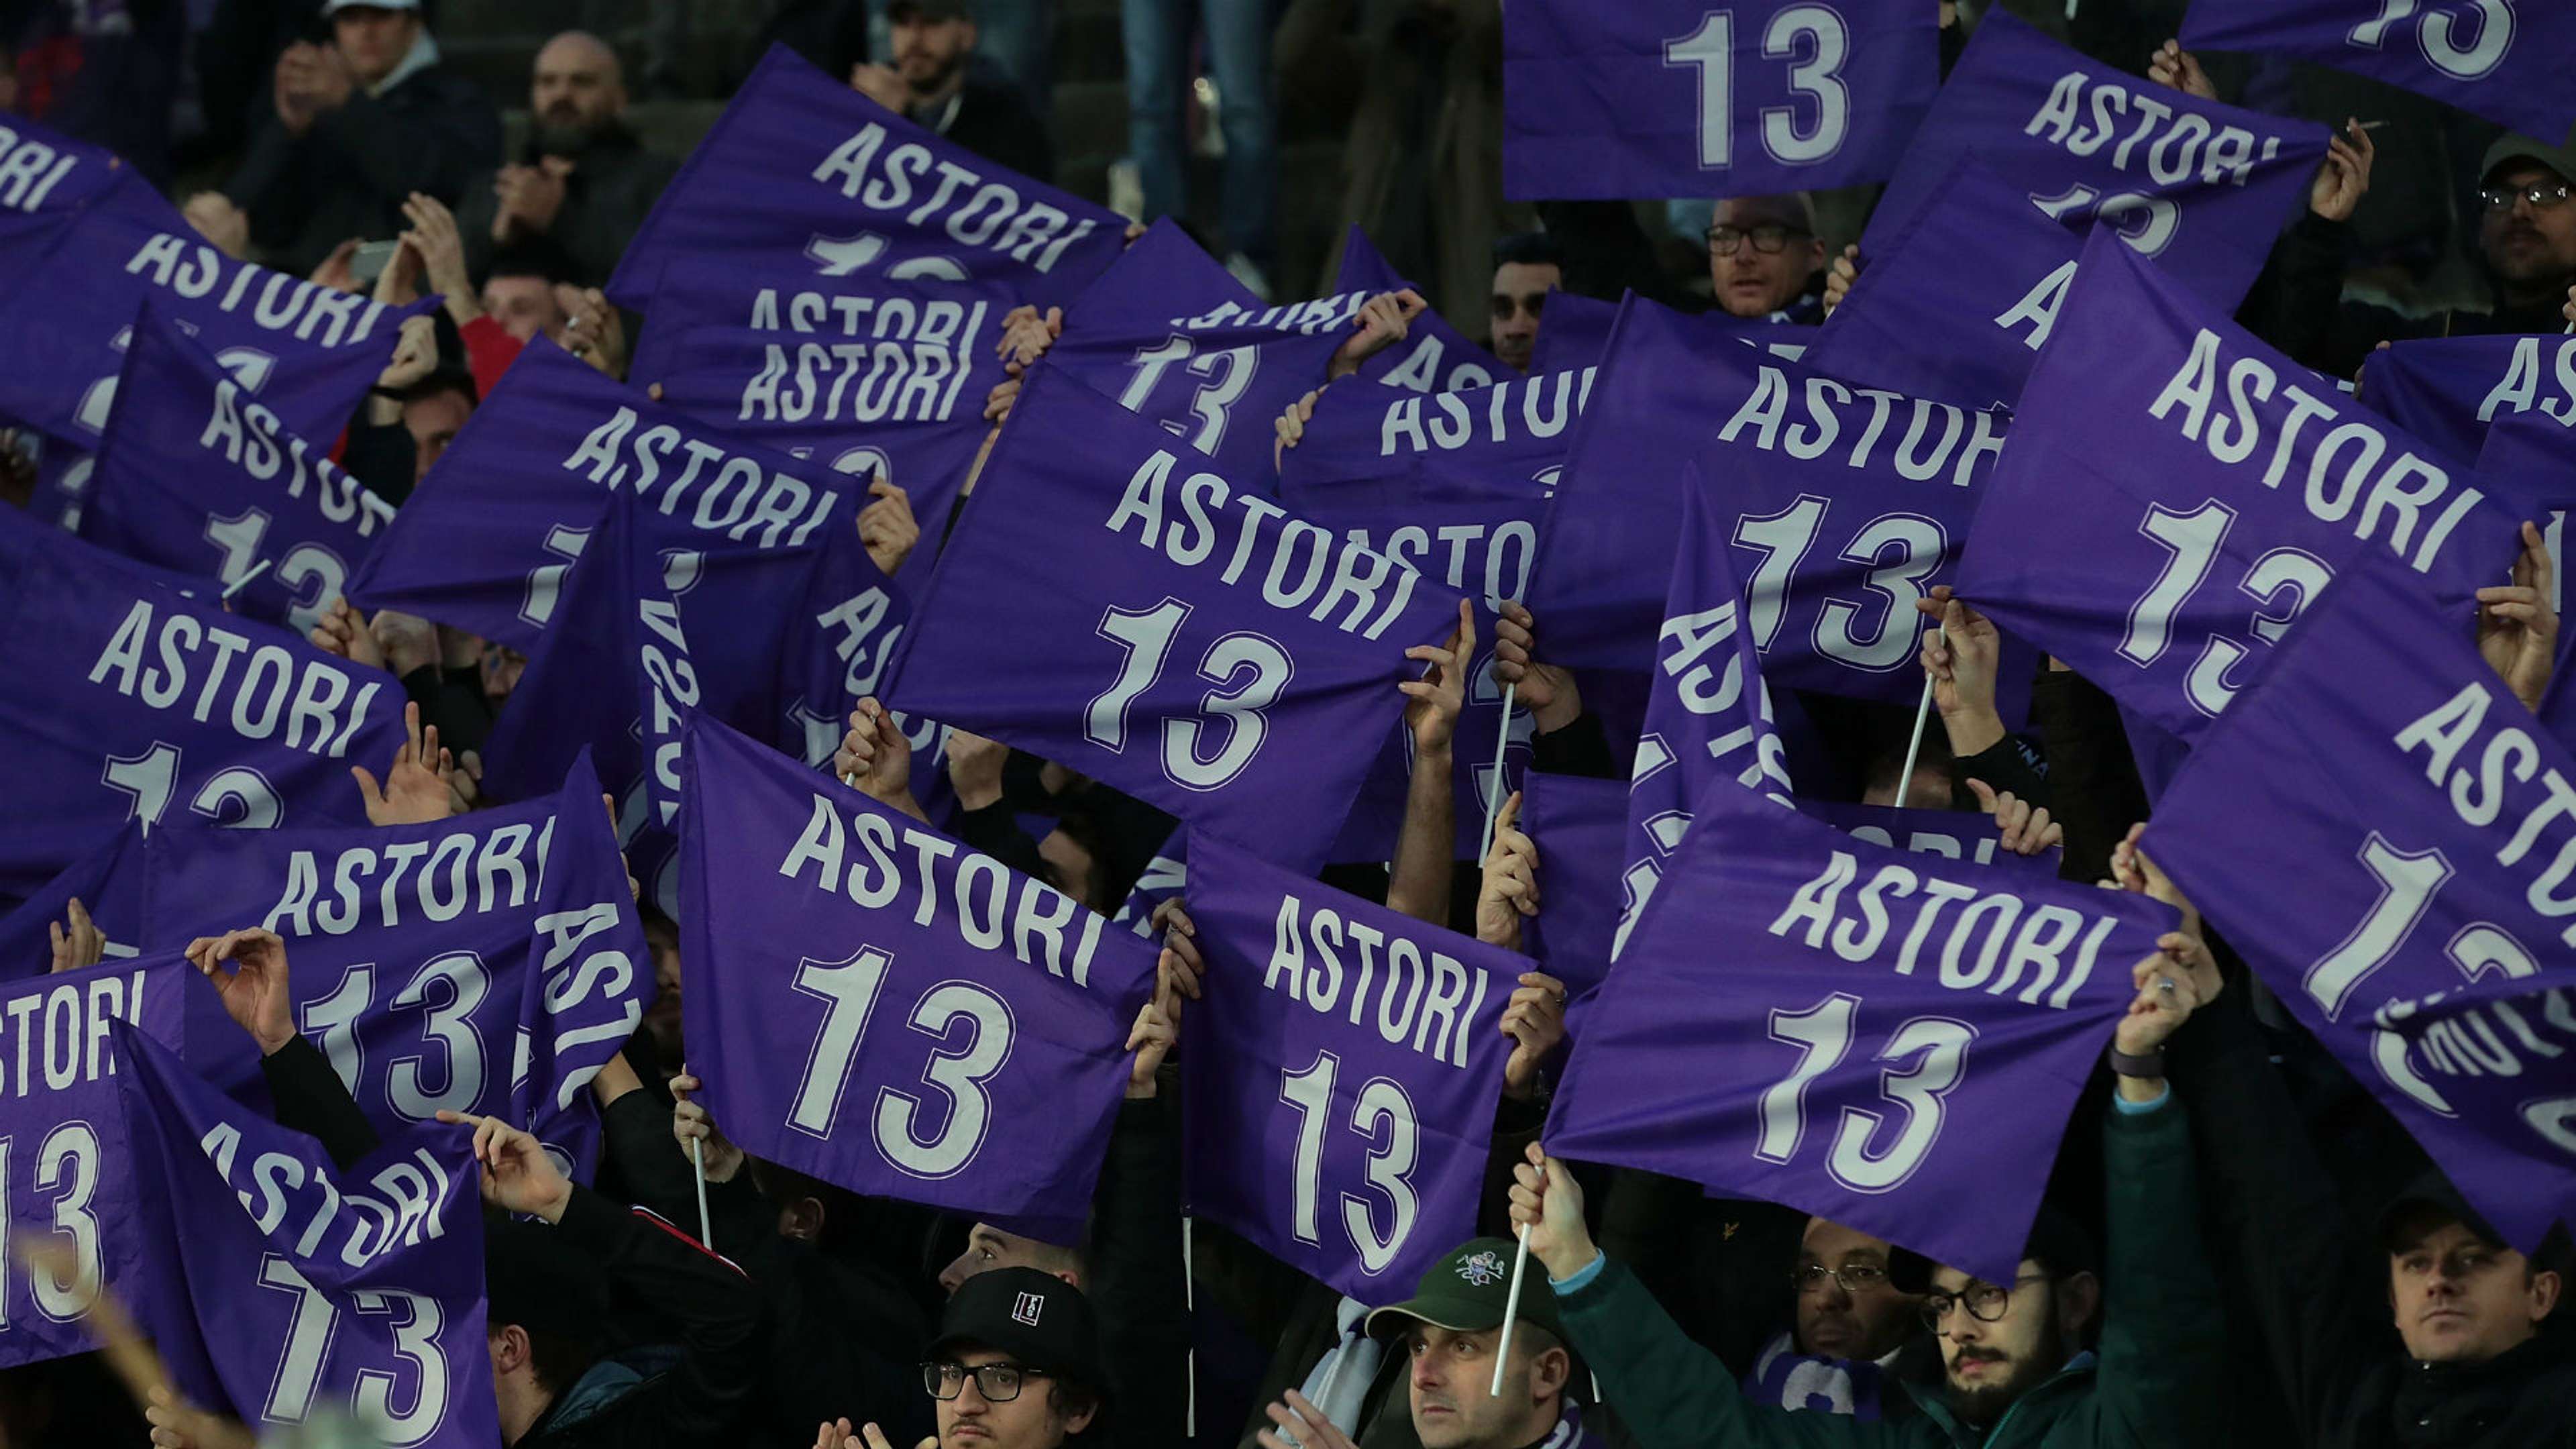 Astori Fiorentina fans